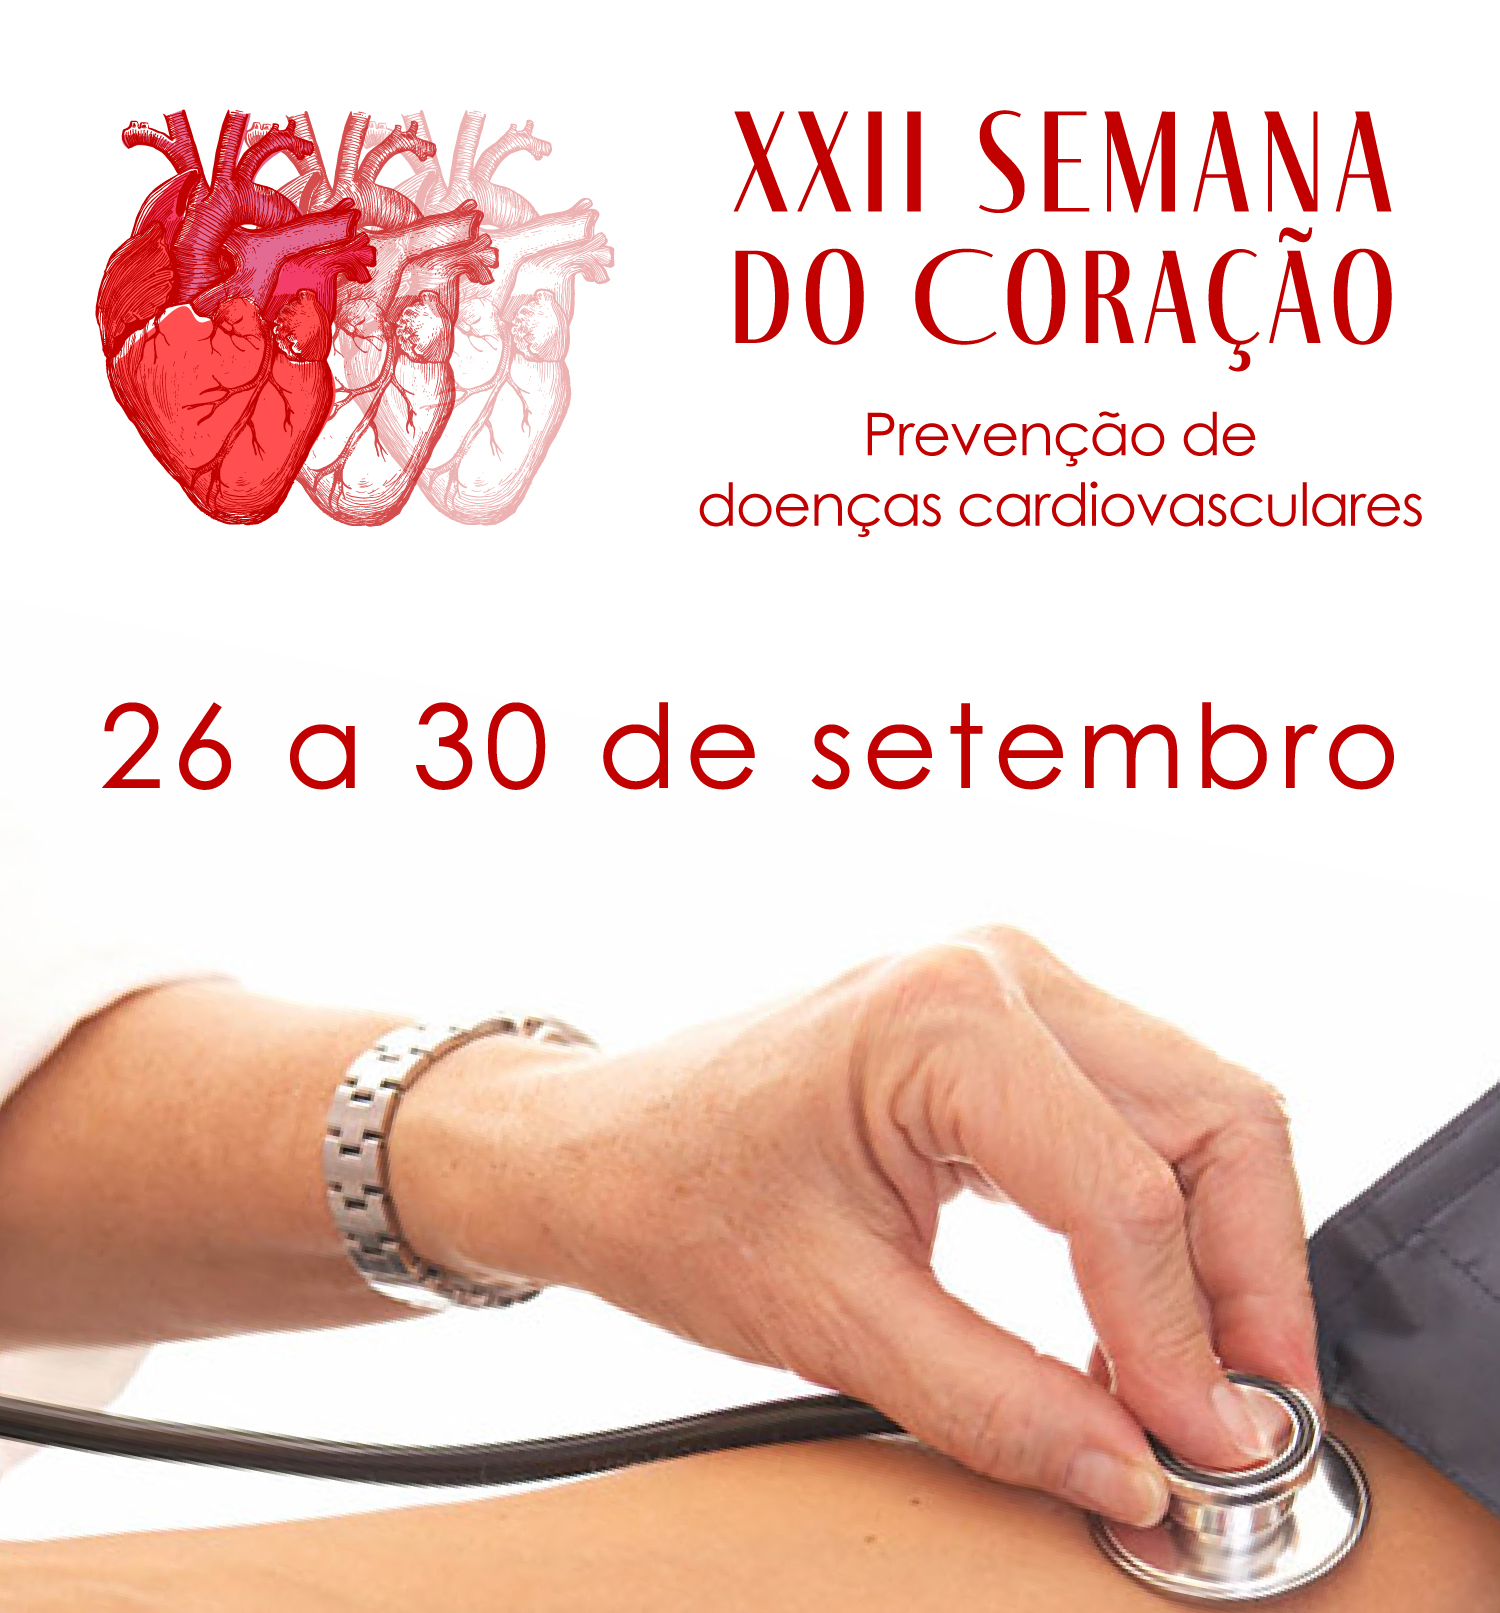 INSTITUCIONAL: Acompanhe a palestra on-line "Você cuida bem do seu coração? O que significa risco cardiovascular?” às 14h